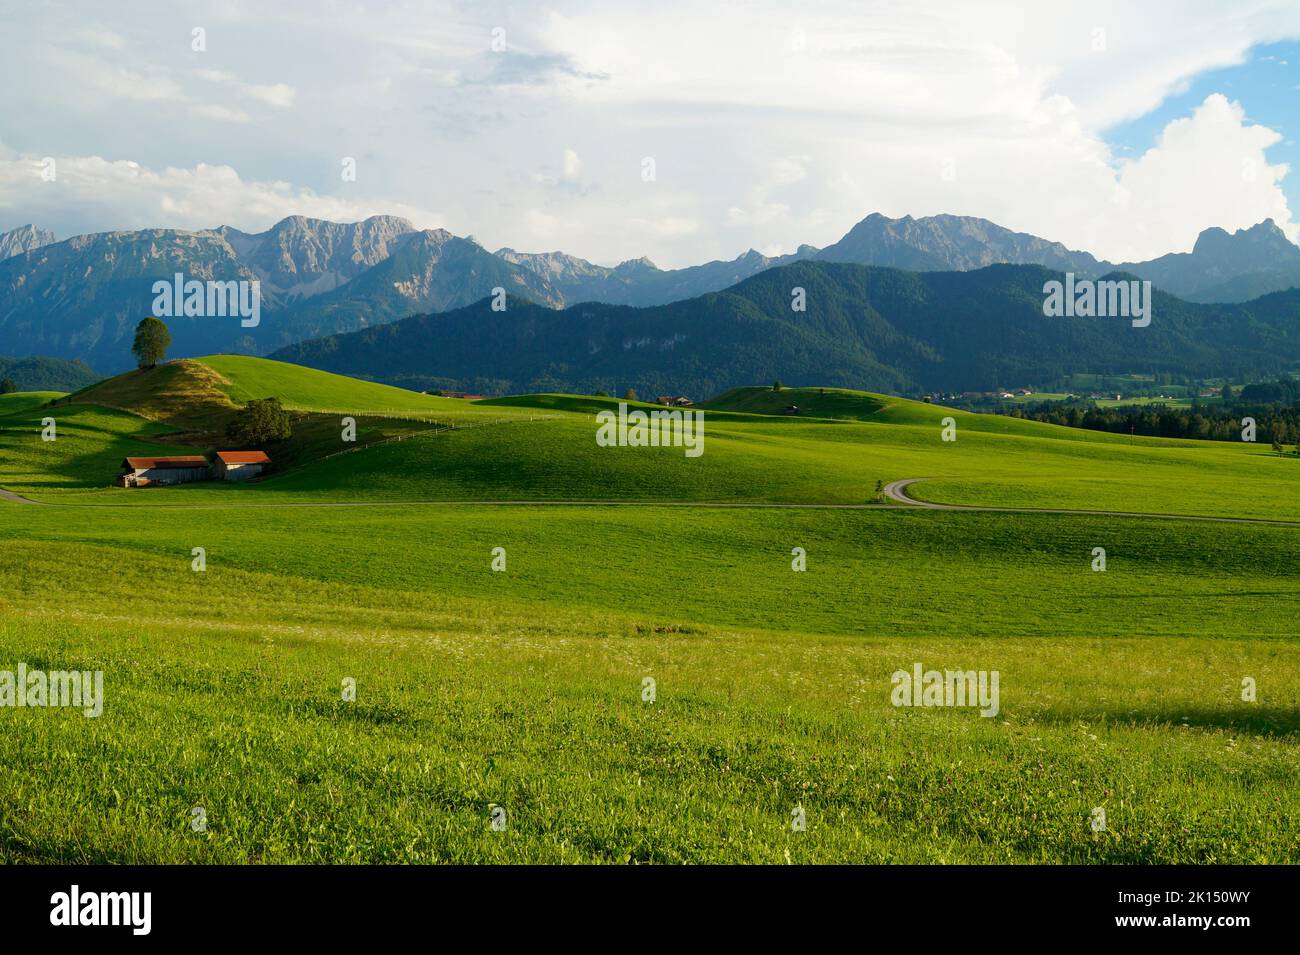 Des prairies alpines pittoresques, ensoleillées et verdoyantes de la région d'Allgaeu en Bavière avec les Alpes en arrière-plan Banque D'Images